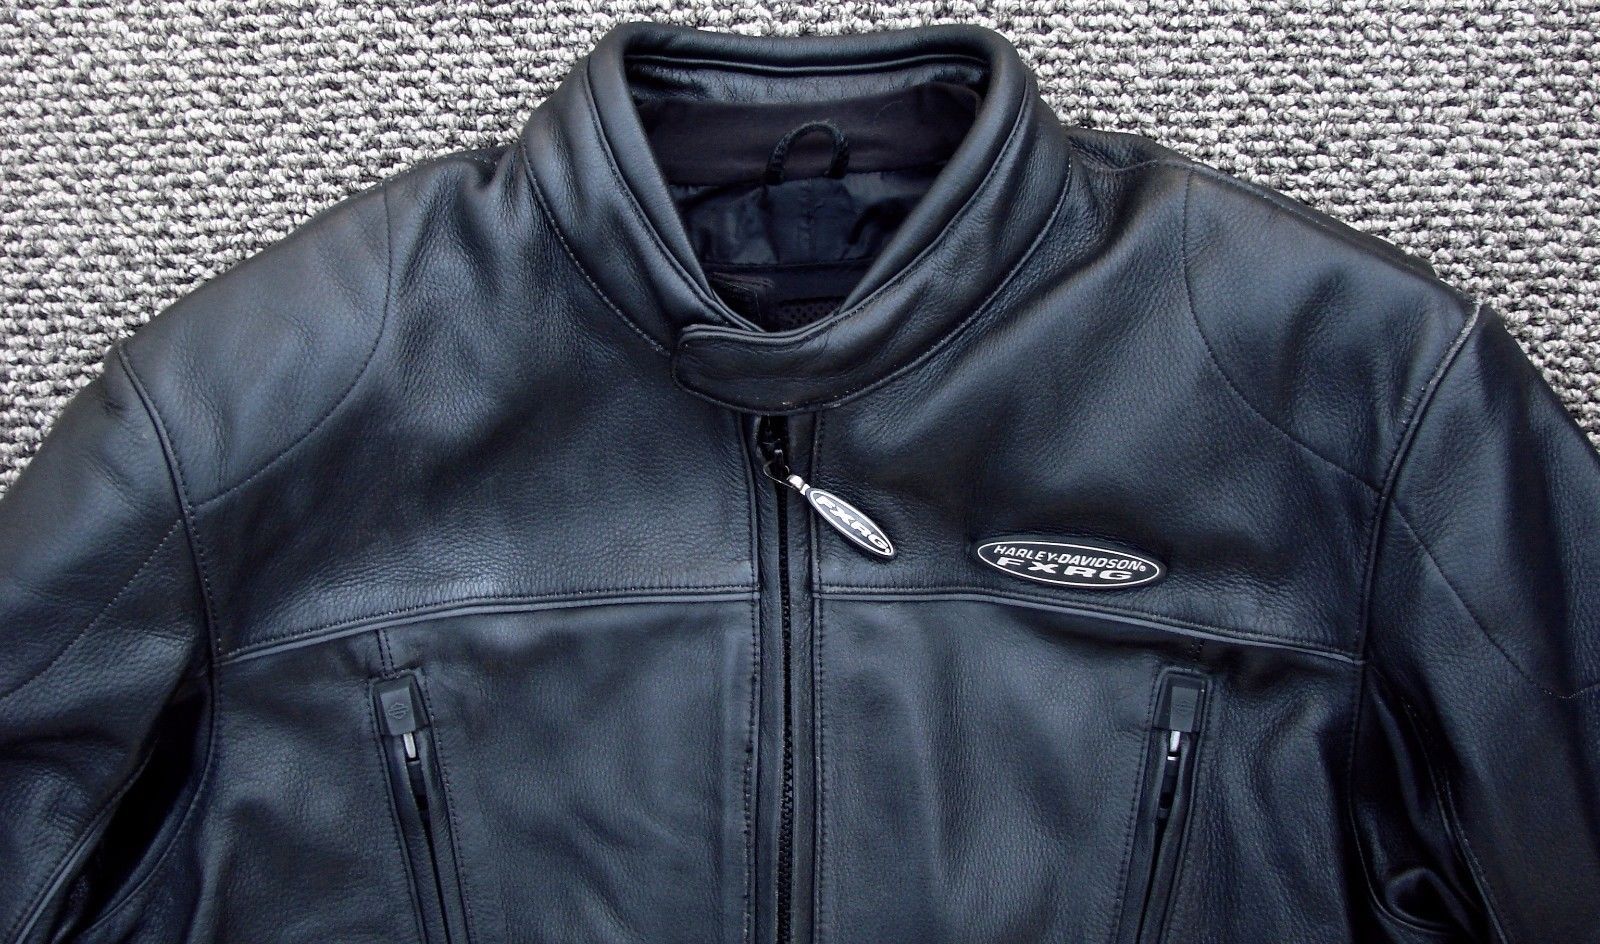 FXRG Harley Leather Jacket 98518-05VL Large/TALL - Harley Davidson Forums